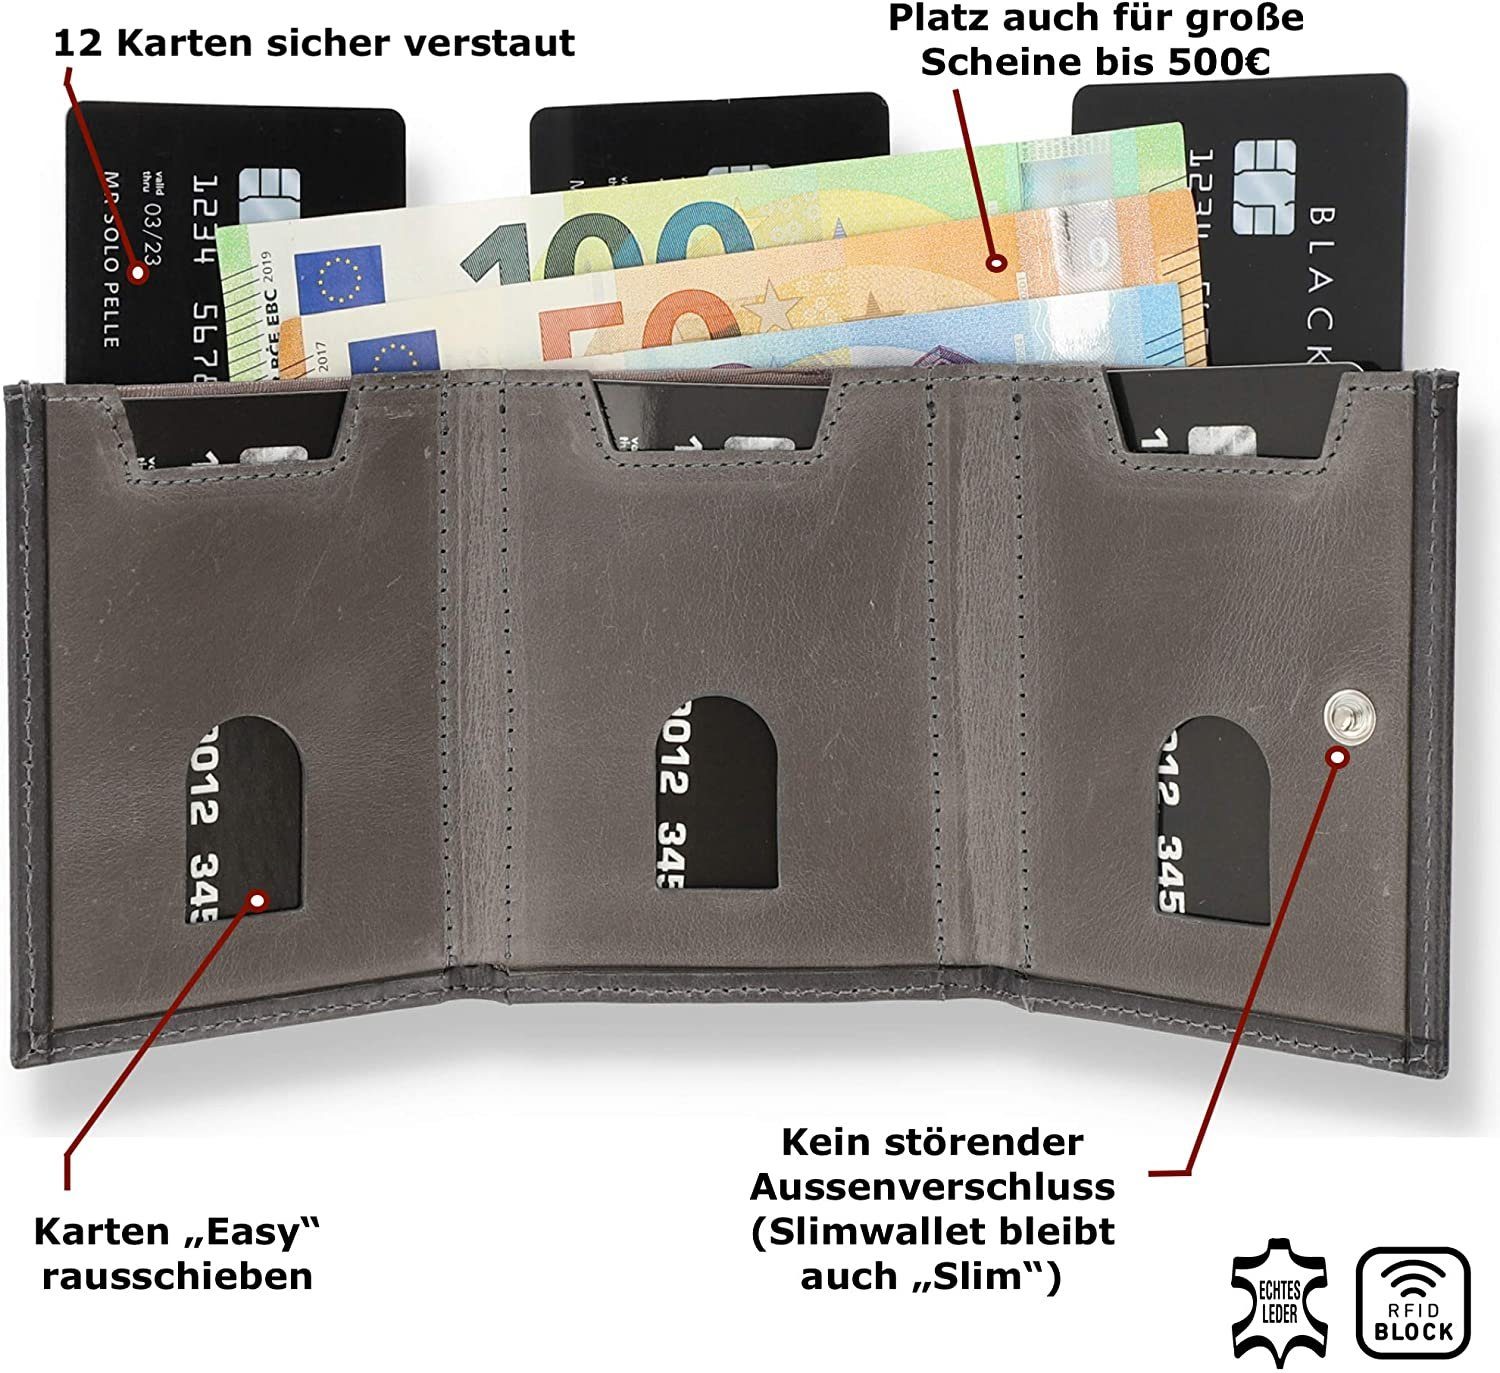 Europe Münzfach [RFID-Schutz], echt in Slim Karten] Brieftasche Schutz, Steingrau RFID Wallet Solo Macde Leder, Riga Slimwallet Pelle mit [12